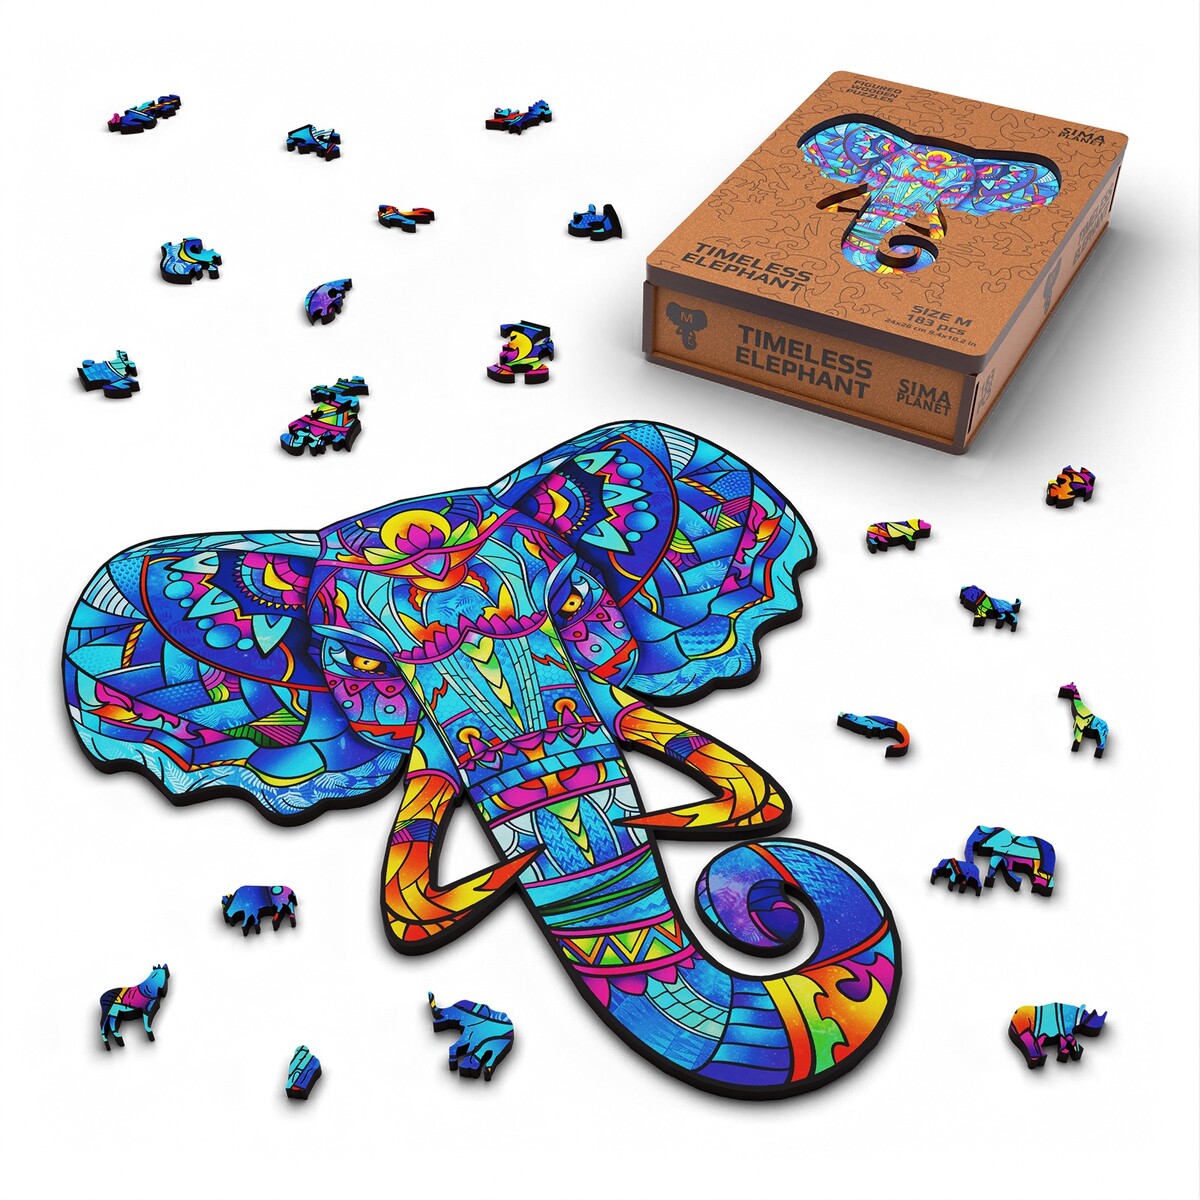 Пазл фигурный деревянный timeless elephant, размер 24х26 см, 183 детали деревянный фигурный пазл диплодок kids s 52 детали